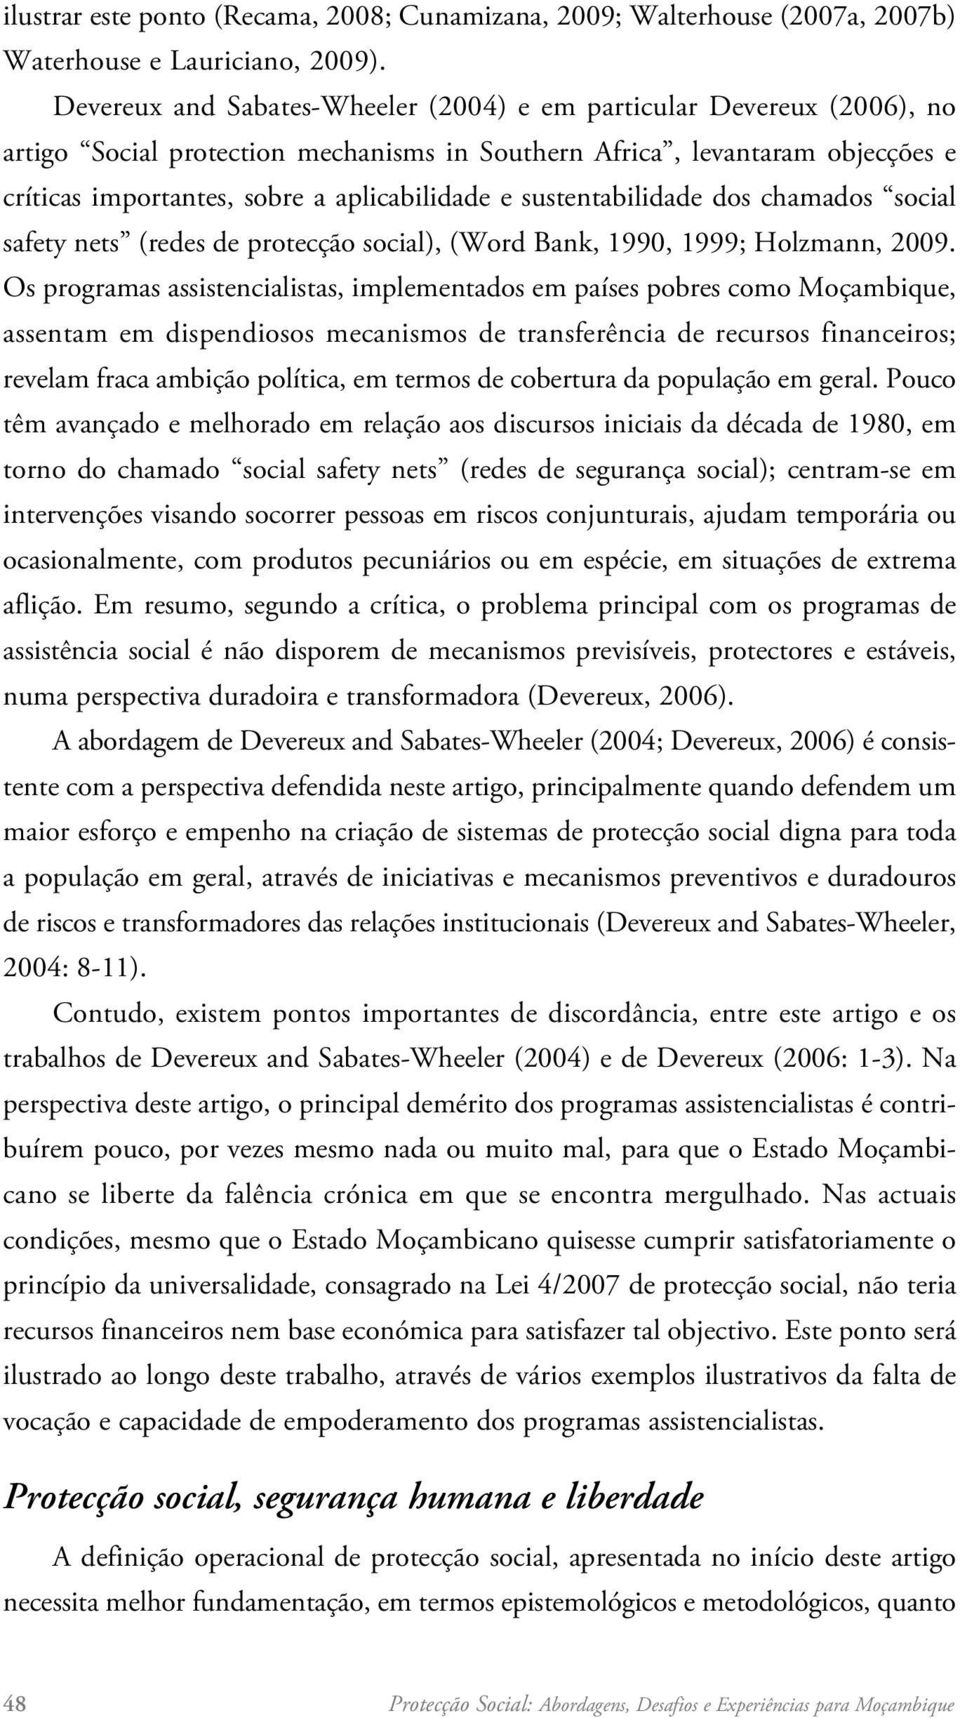 sustentabilidade dos chamados social safety nets (redes de protecção social), (Word Bank, 1990, 1999; Holzmann, 2009.